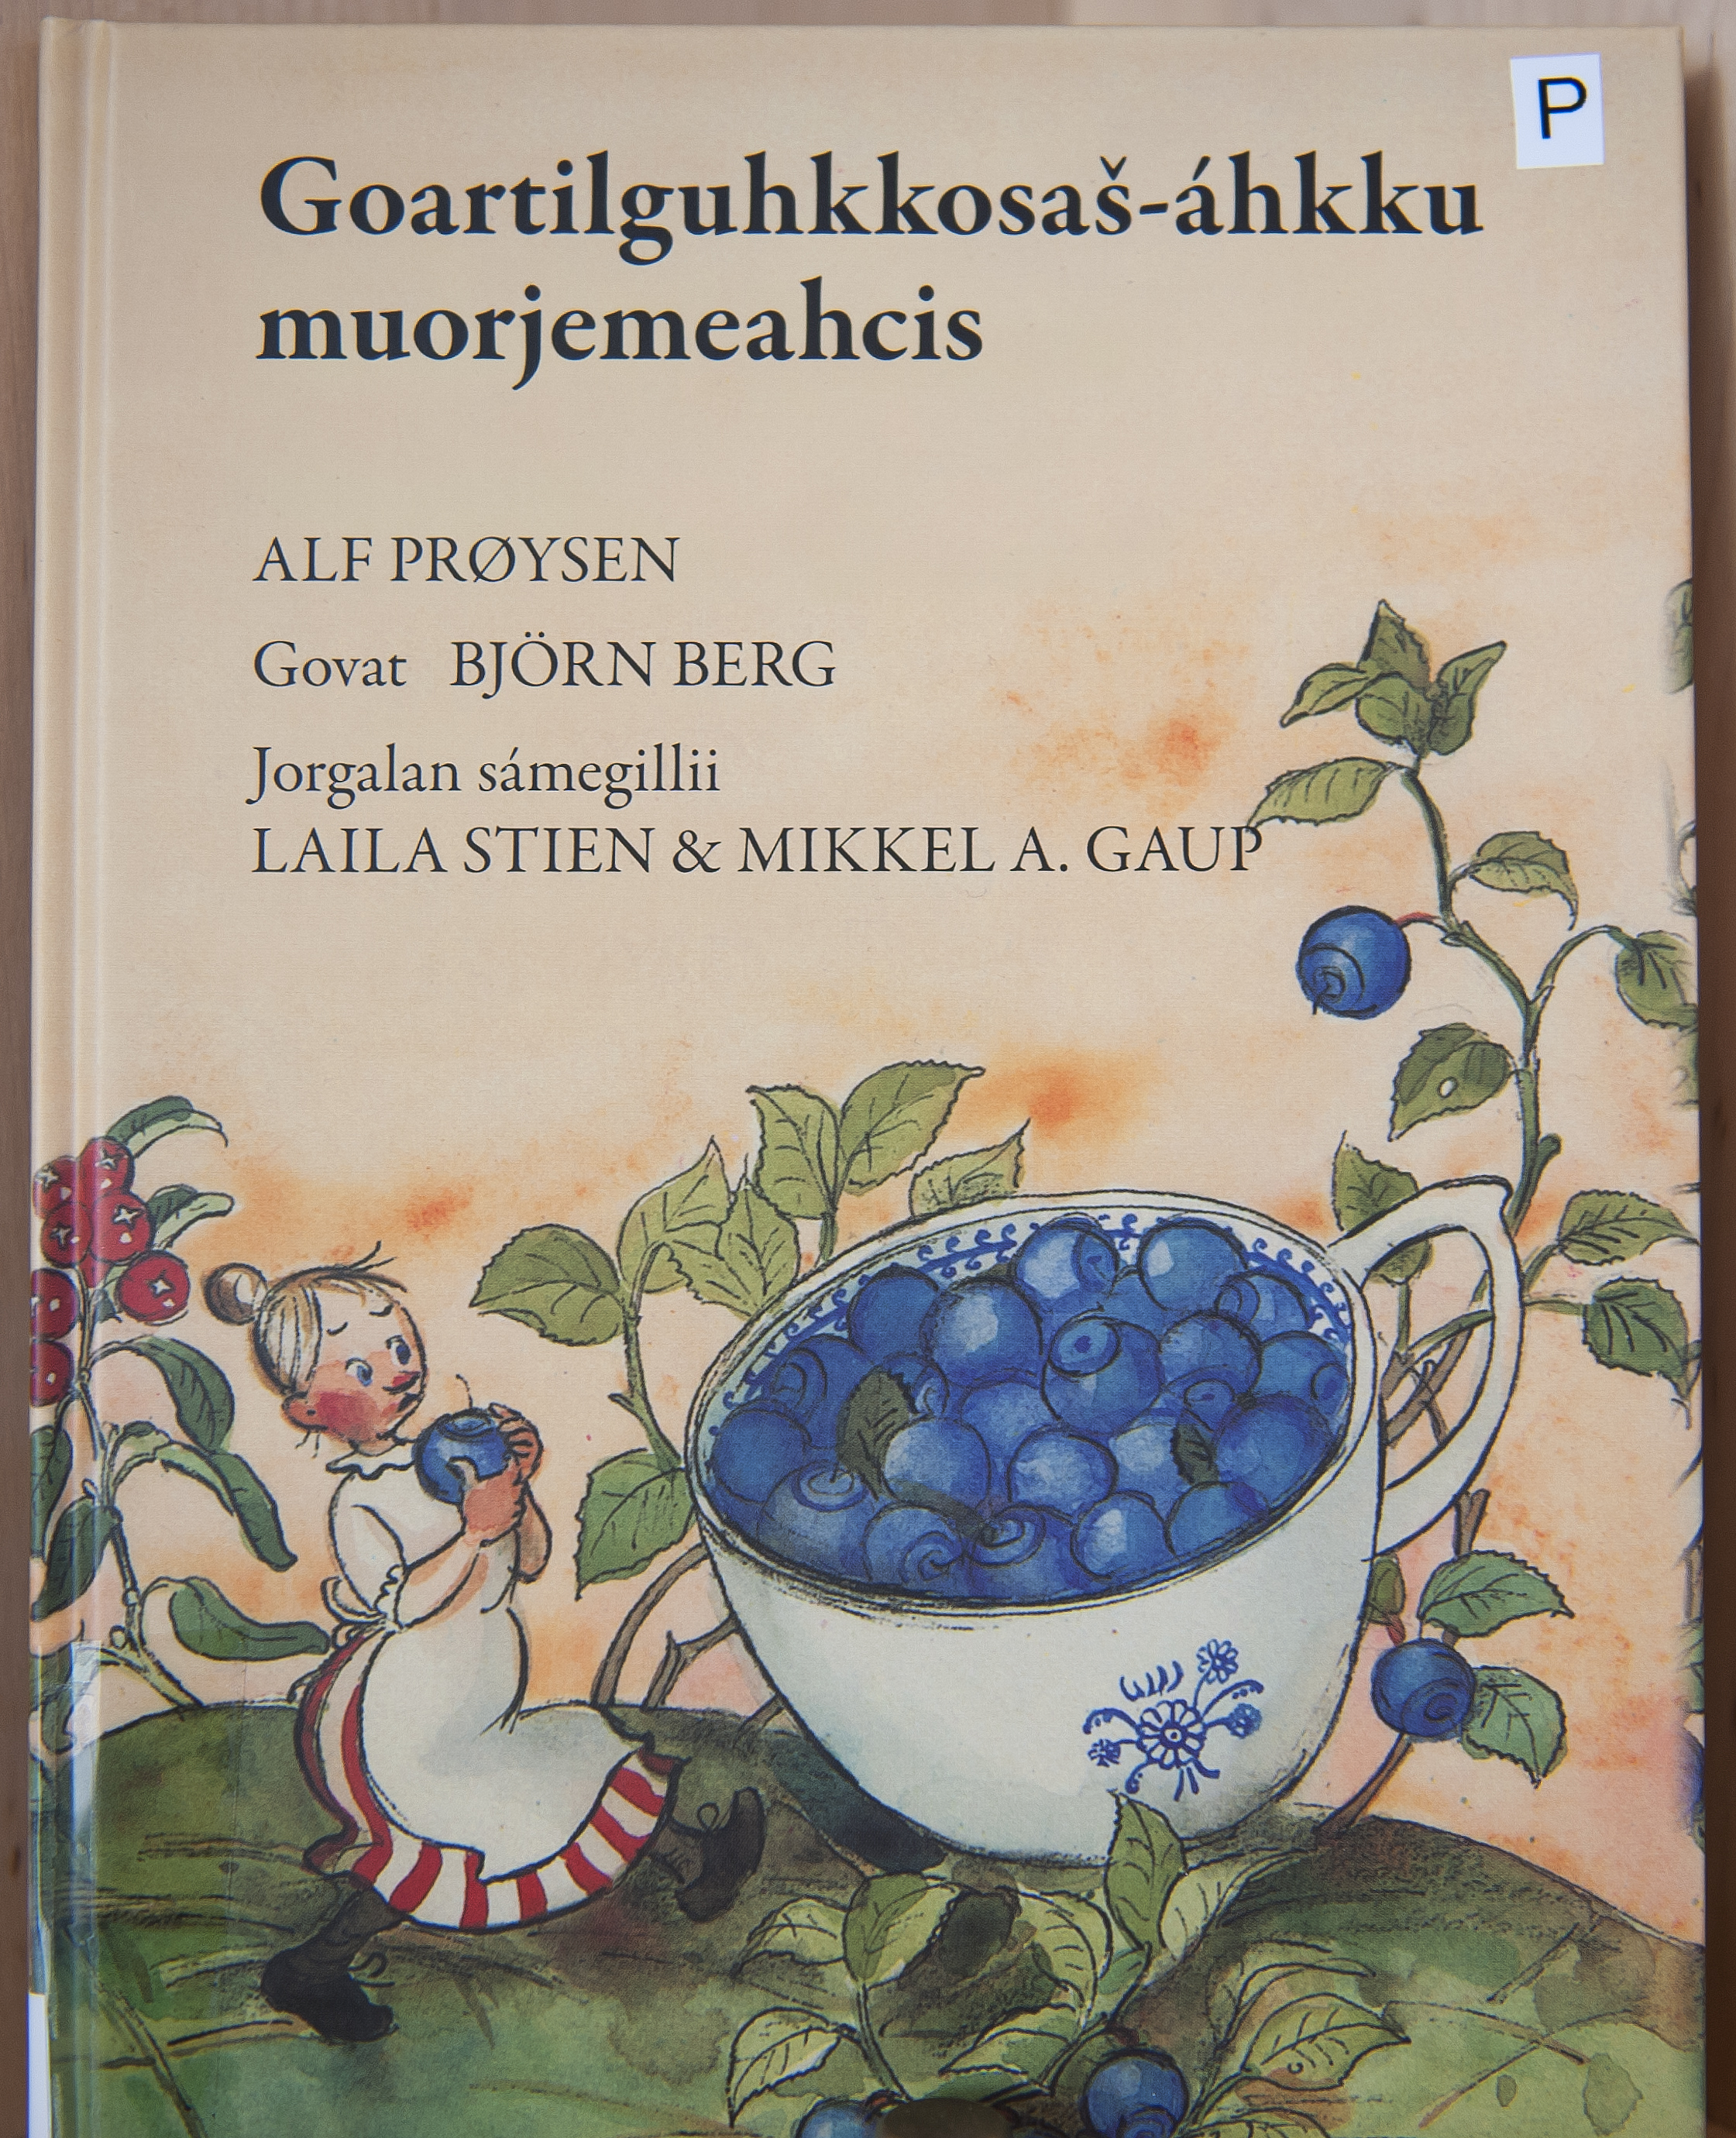 En kendt bog (Konen der blev så lille som teske), som dog nok er lidt svær at læse for en dansker!